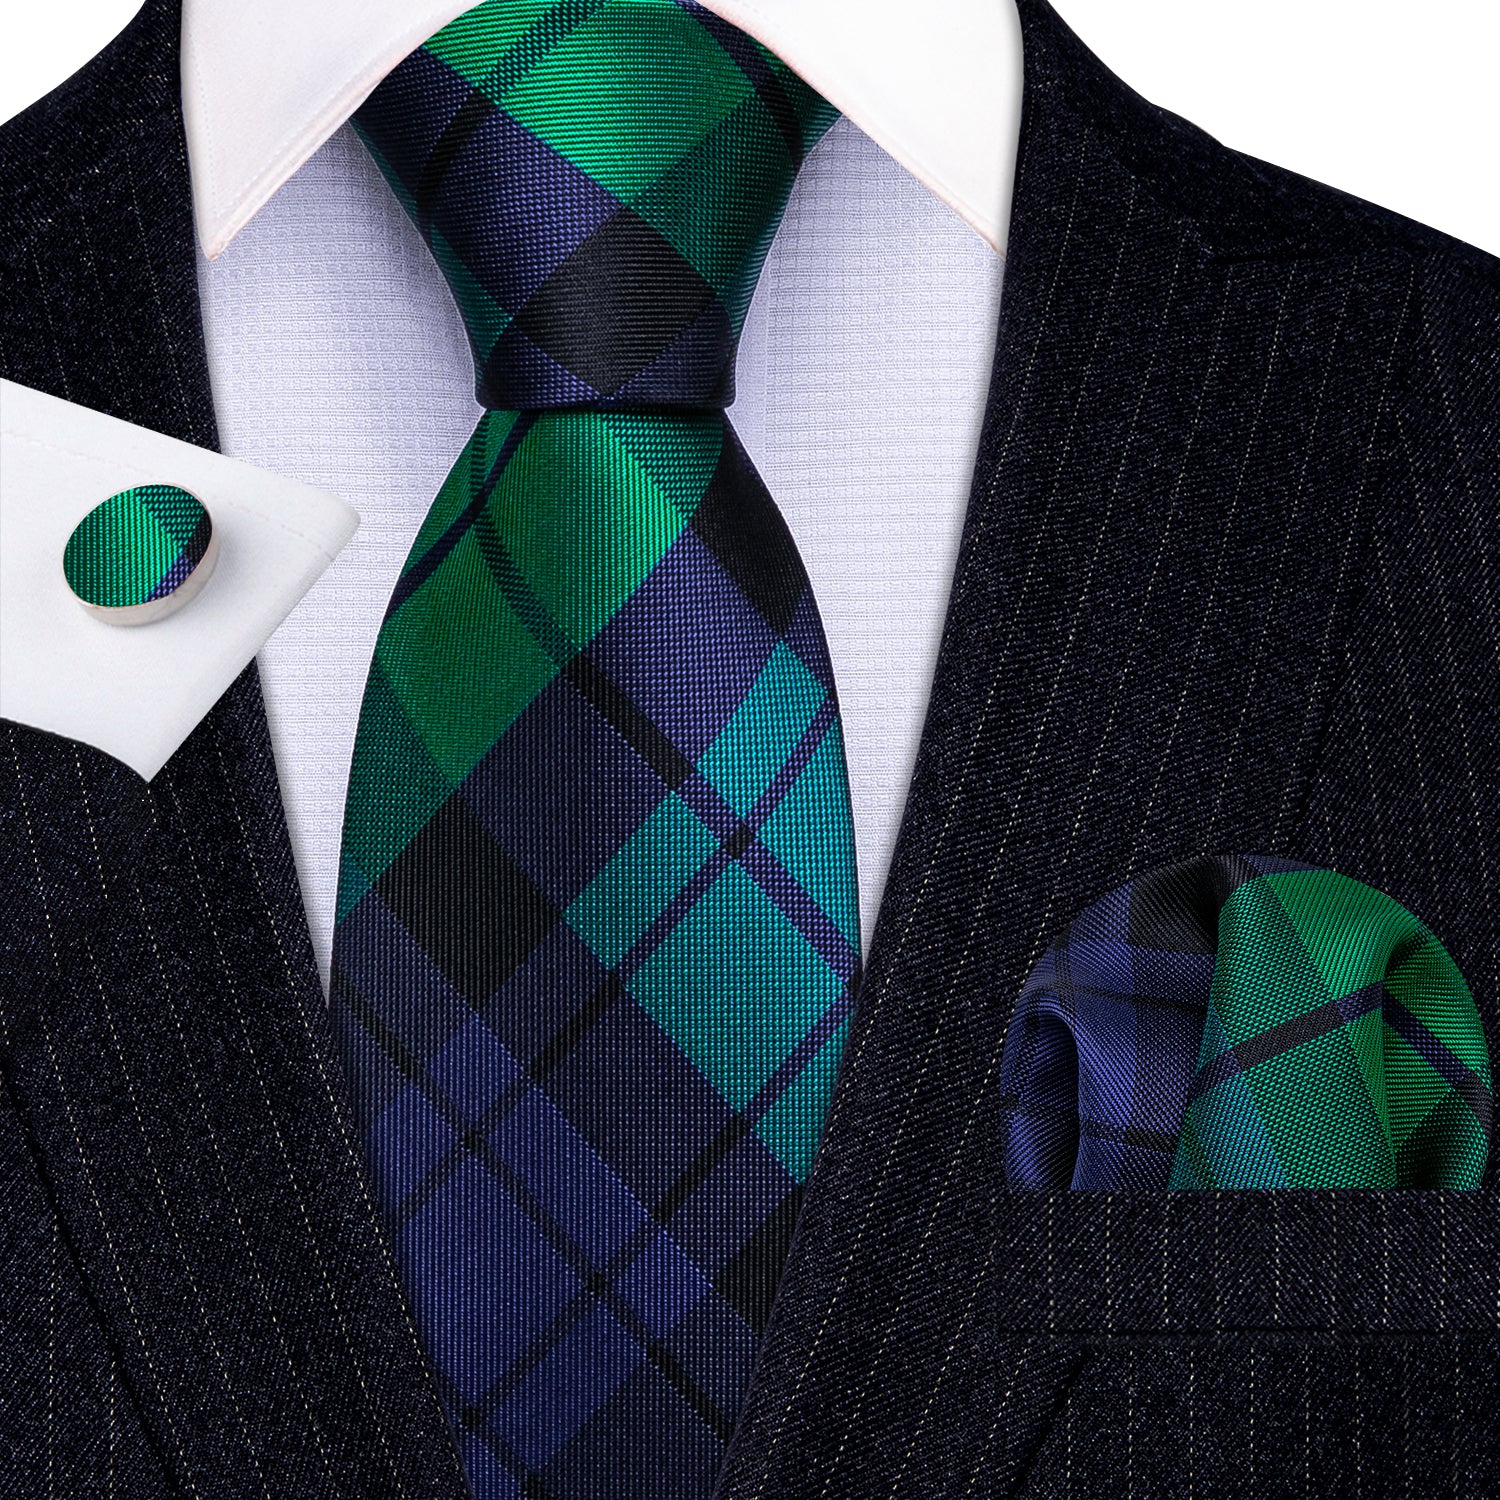 Barry.wang Men's Tie Blue Green Plaid Striped Silk Tie Hanky Cufflinks Set New  Arrival